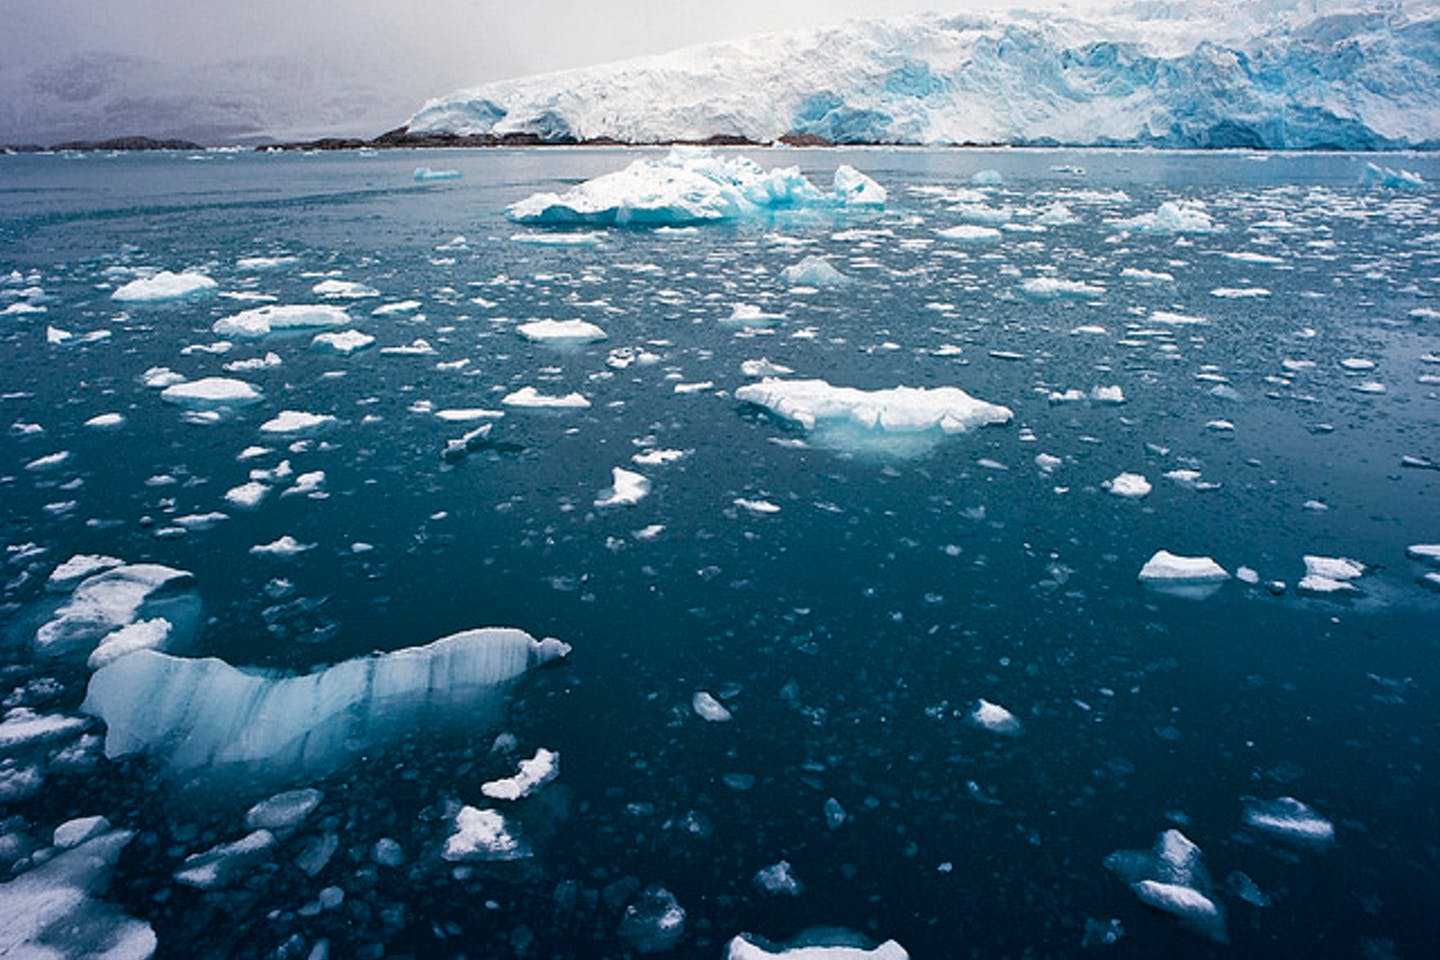 Atlantificación: el calor del Atlántico está afectando al hielo del Ártico.